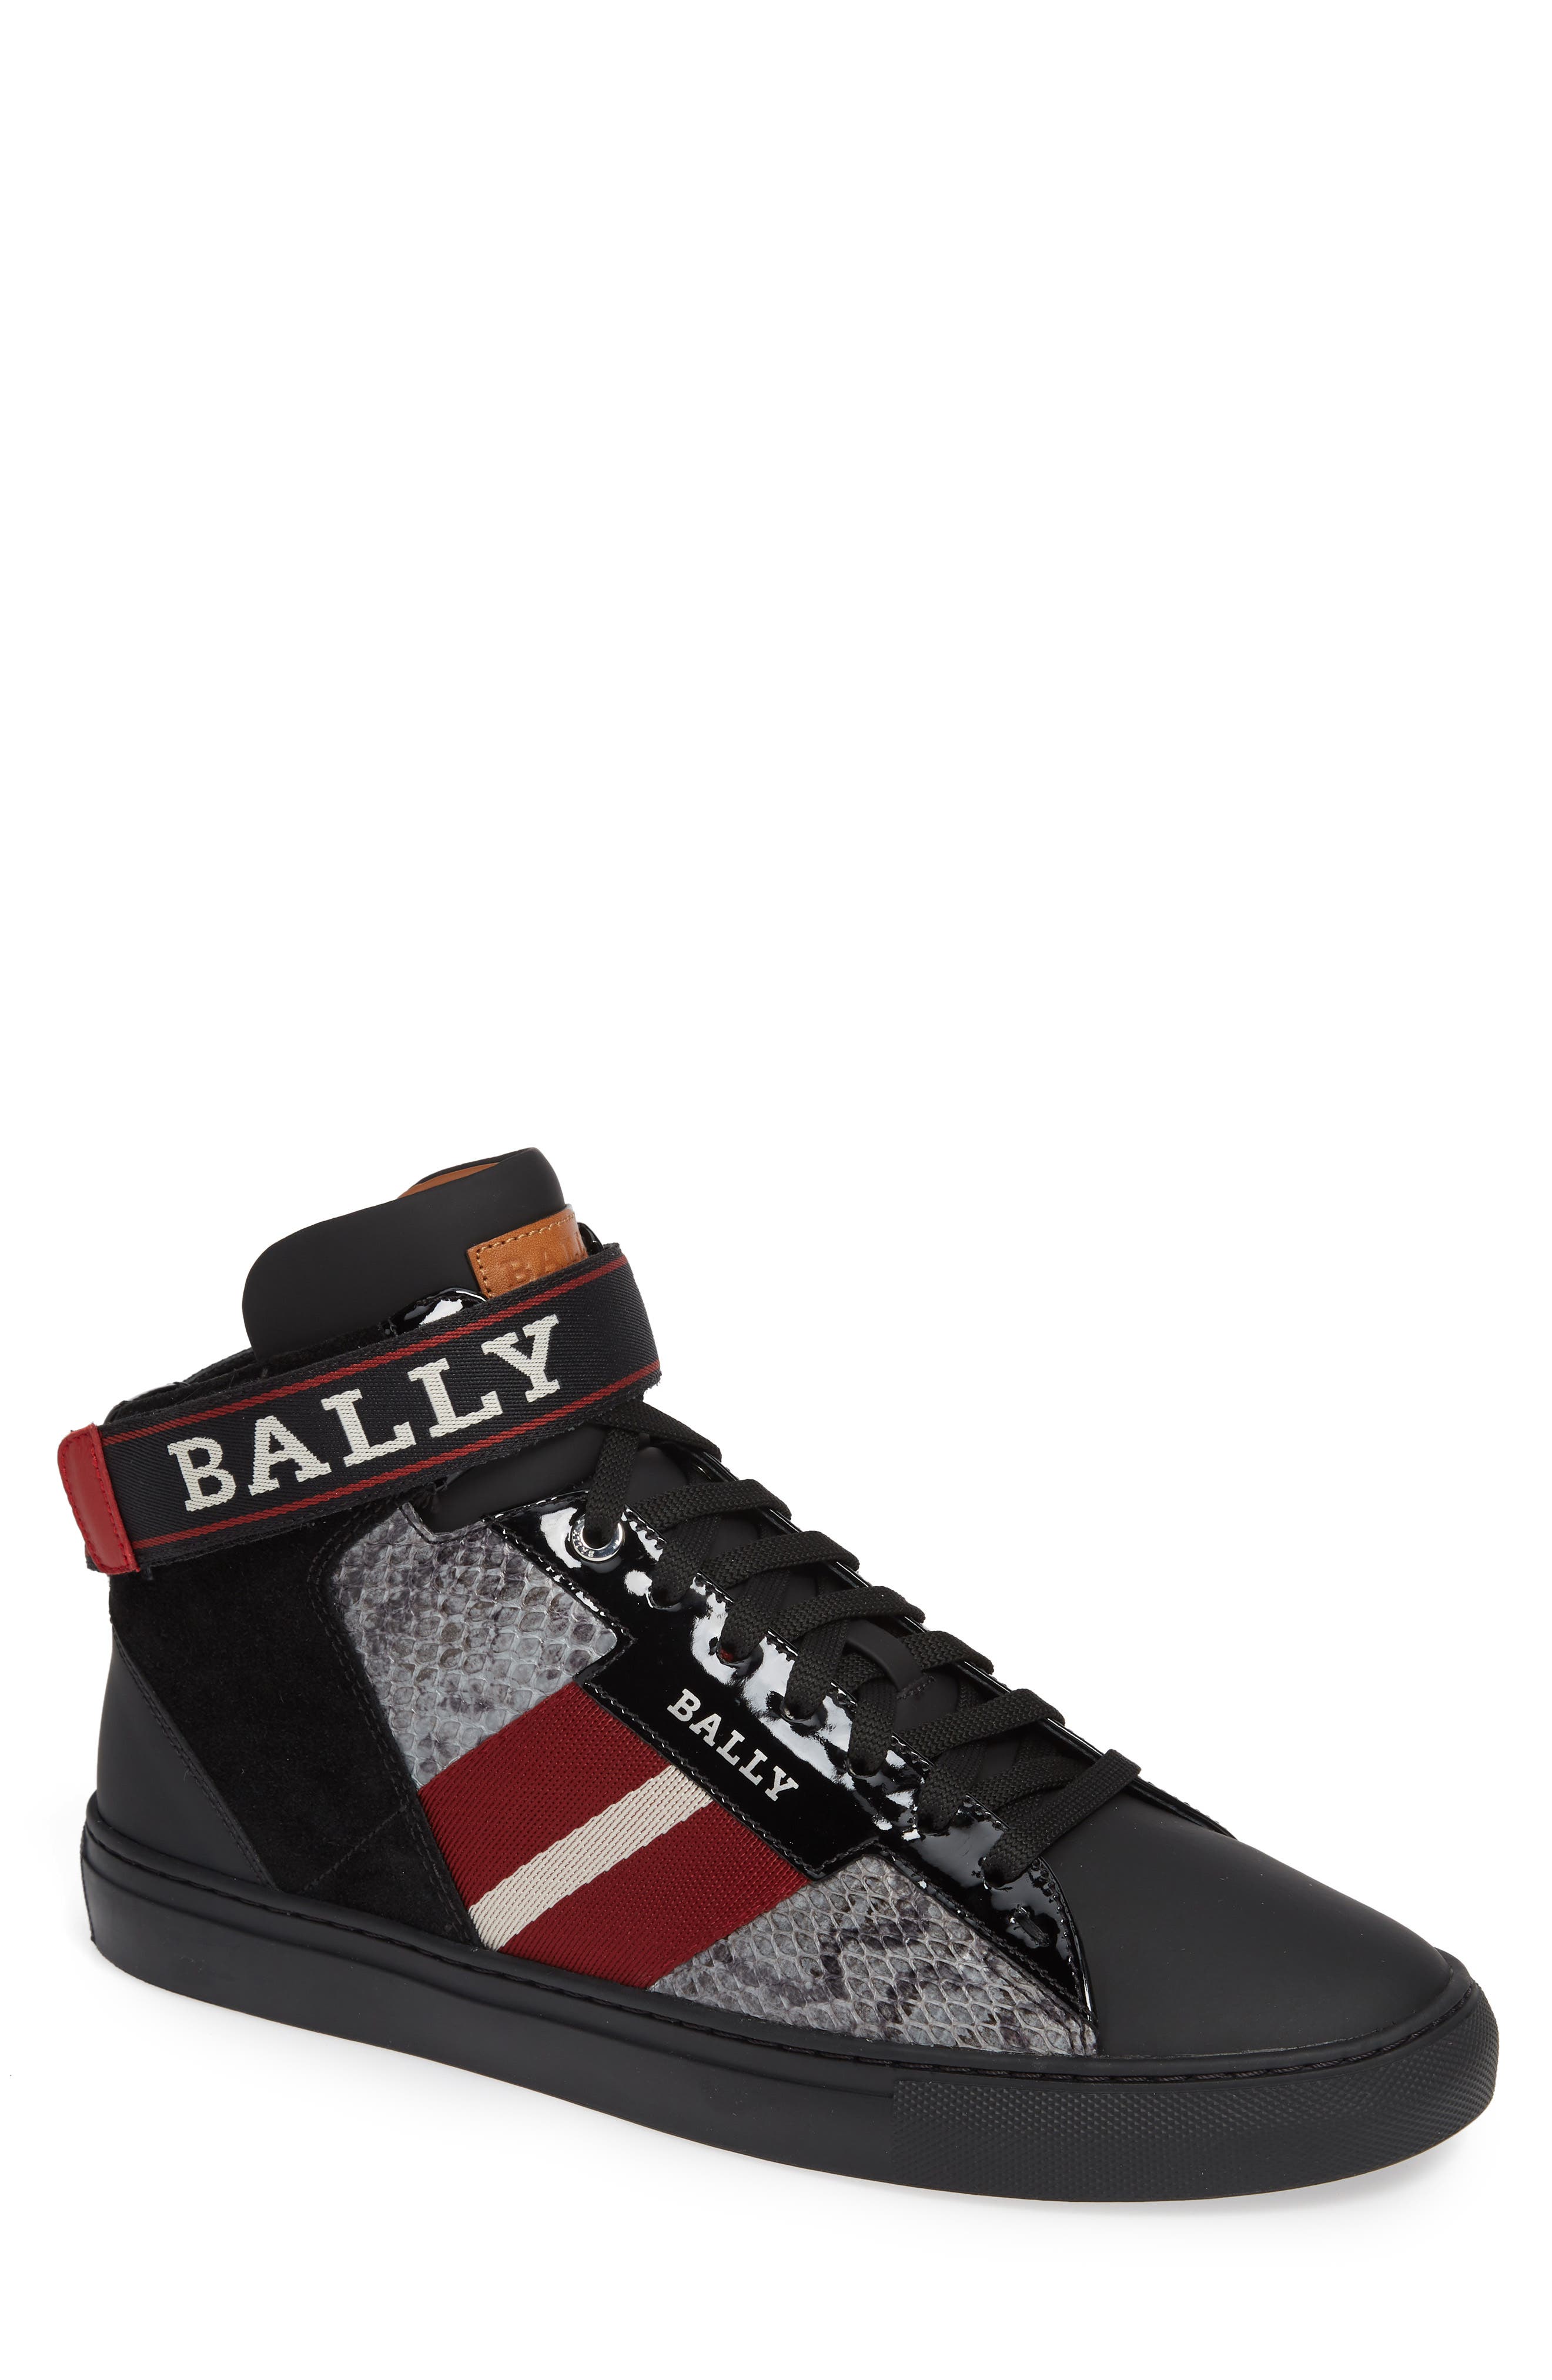 bally snakeskin sneakers